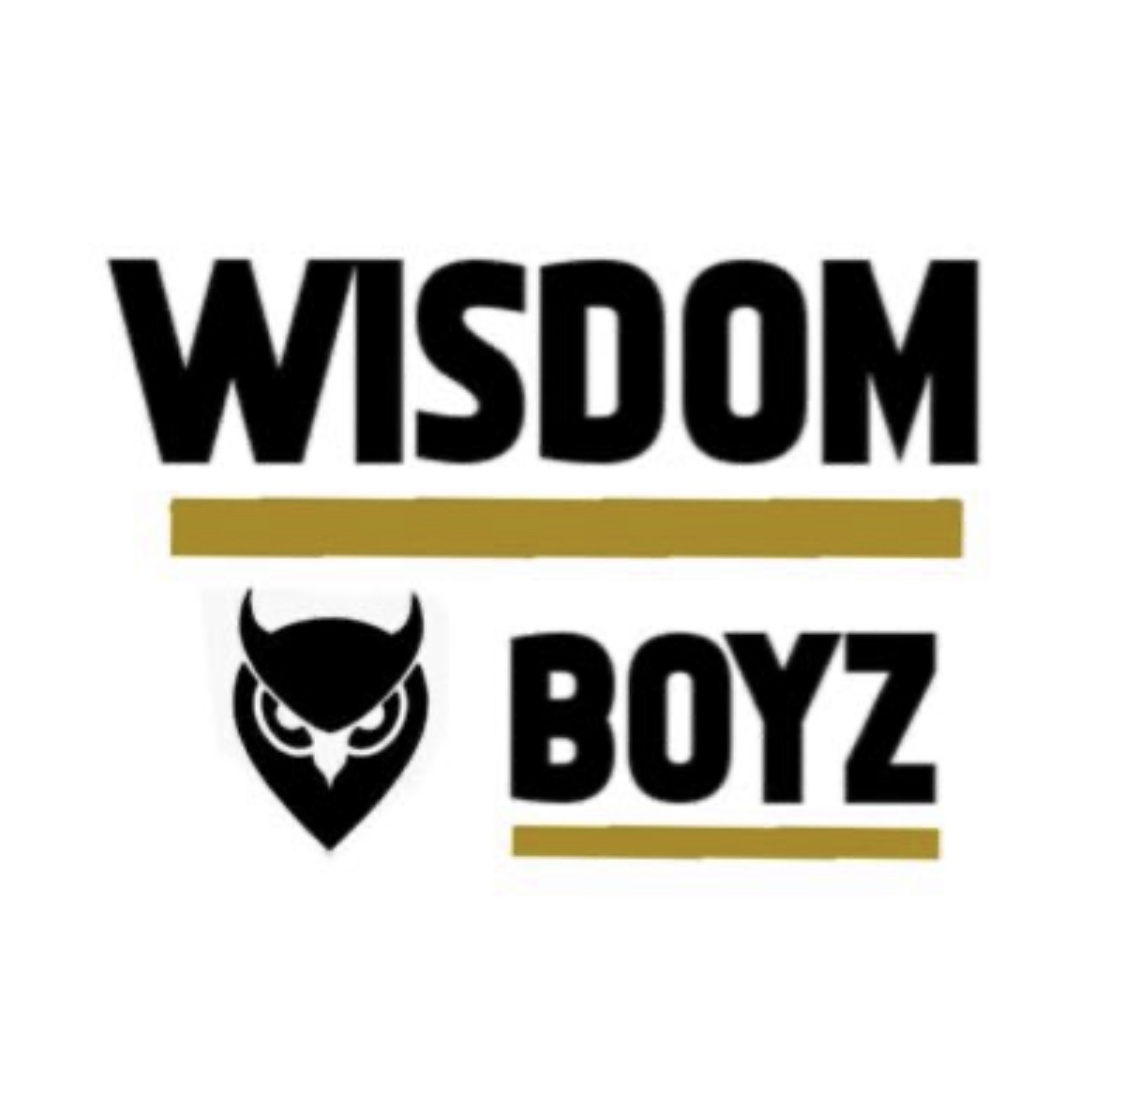 Wisdom Boyz